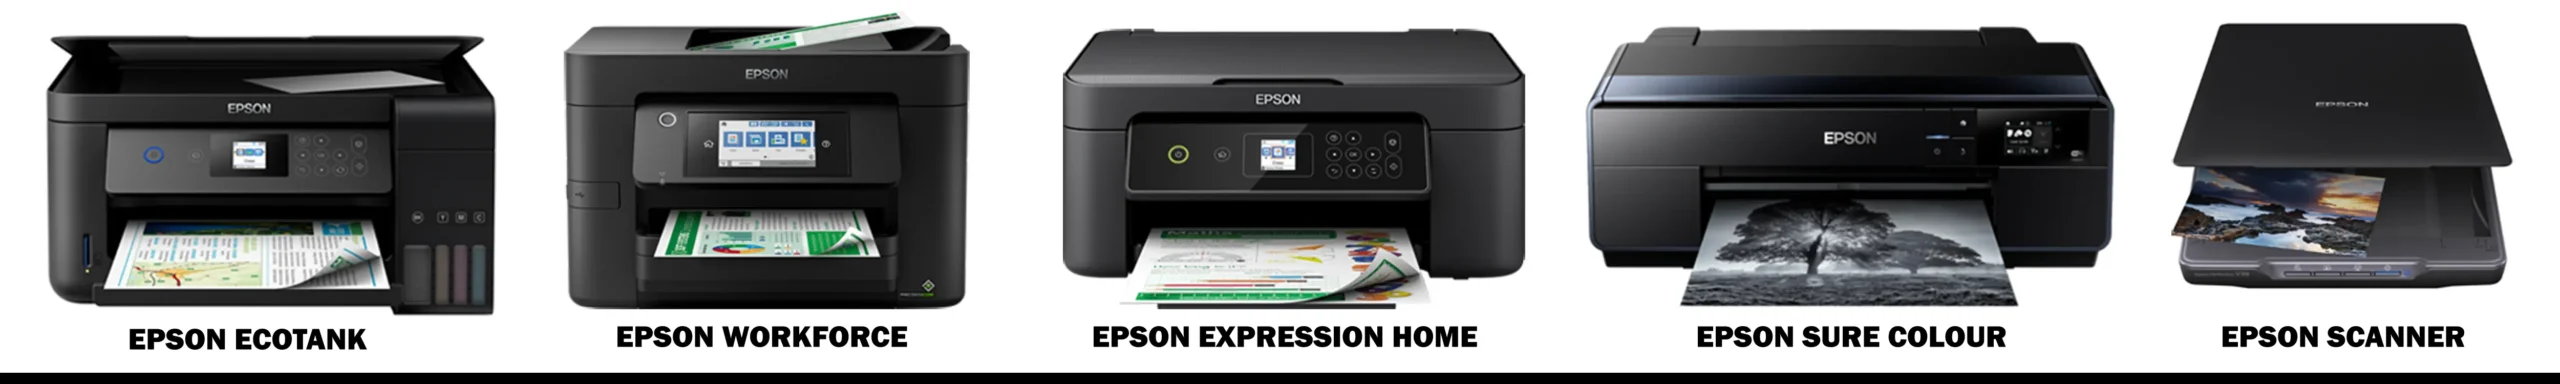 Laden Sie den Epson-Druckertreiber und die Benutzeranleitung herunter